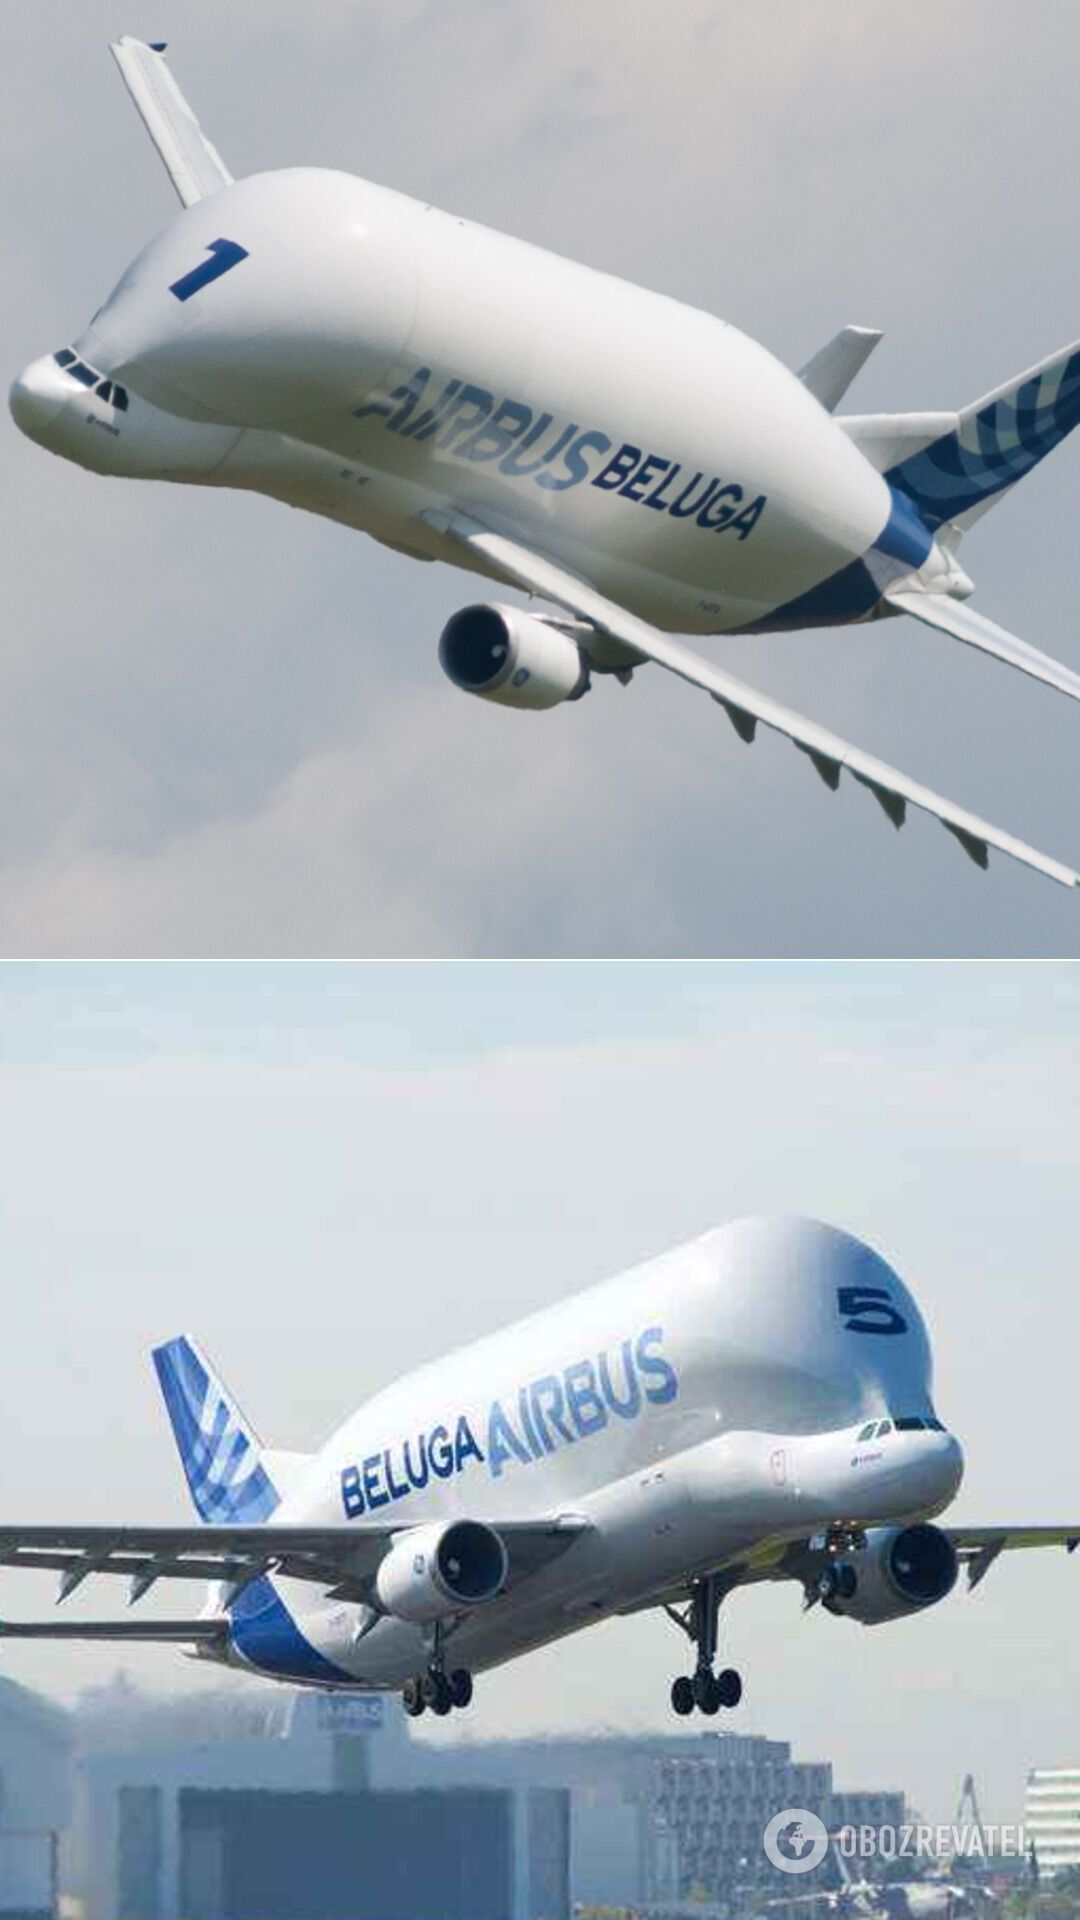 Літак A300-600ST, який прозвали Білугою в авіаційній галузі. Його довжина 56 метрів, крило 45 метрів, висота 17 метрів і порожня маса 86 тонн, максимальна злітна маса Beluga становить 155 тонн. Було випущено всього п'ять екземплярів такого літака